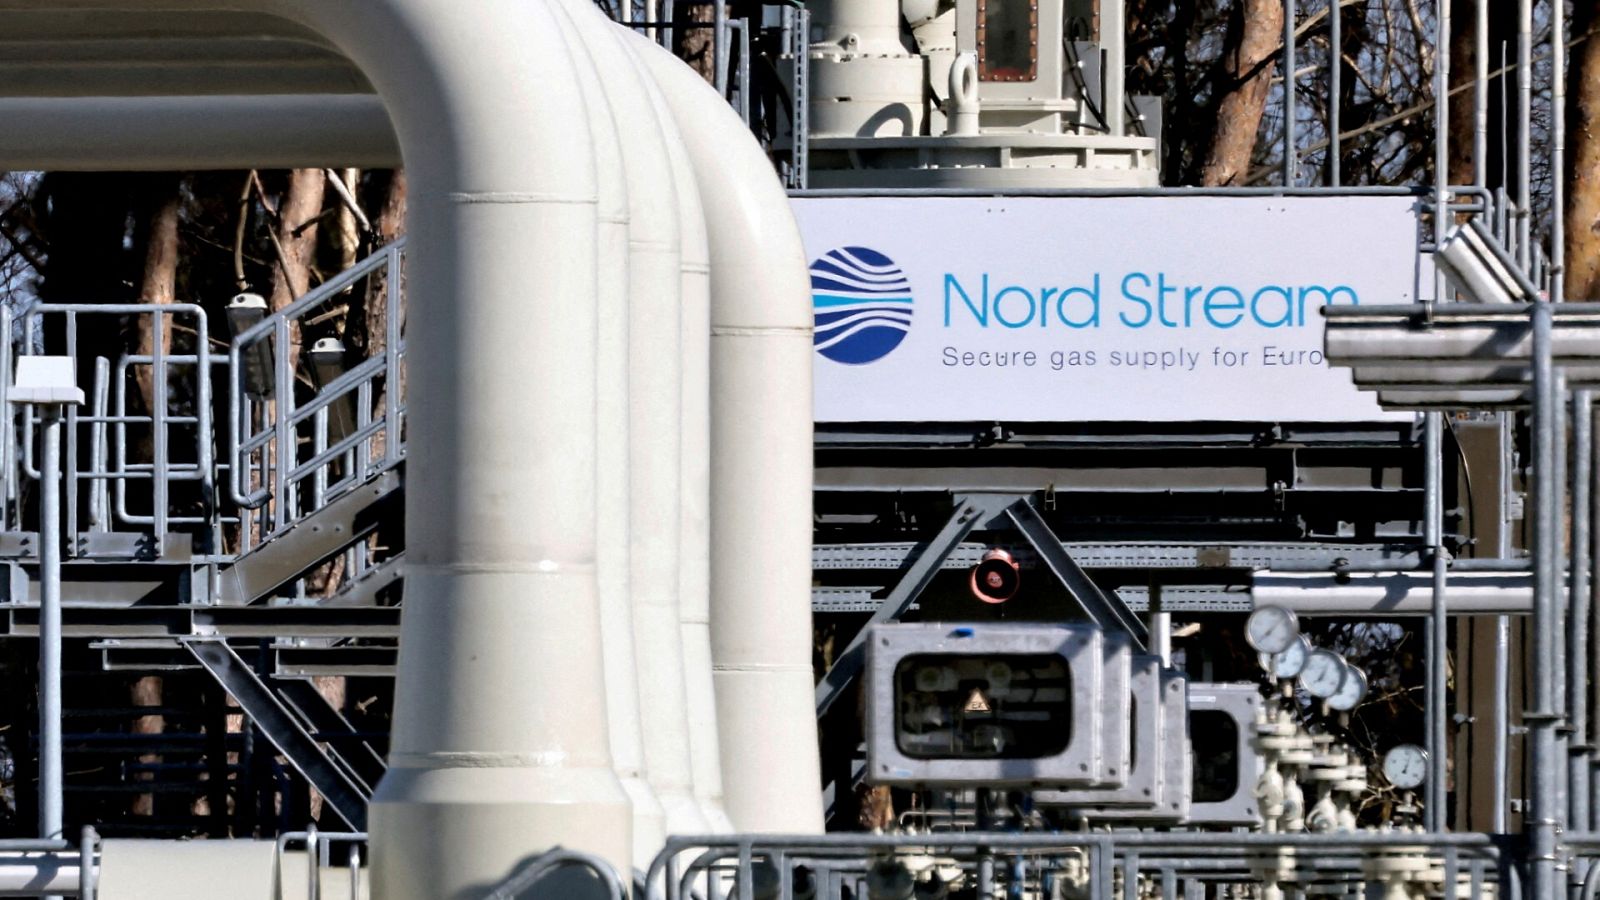 Las tuberías de las instalaciones del gasoducto Nord Stream 1 en Lubmin, Alemania